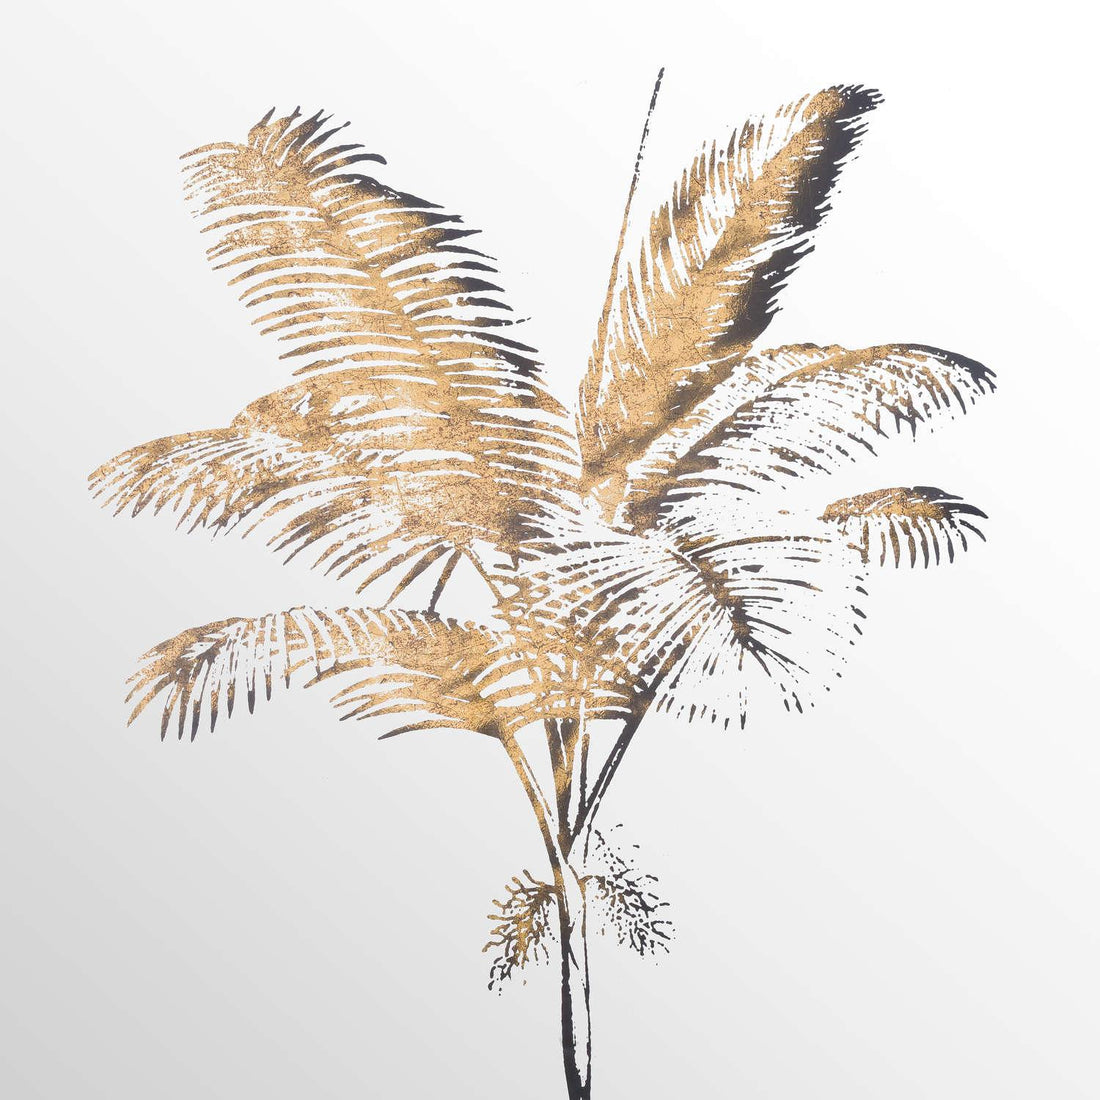 Metallic Mirrored Brass Palm Wall Art - £74.95 - Art & Printed Products > Printed Art > Floral Printed Art 